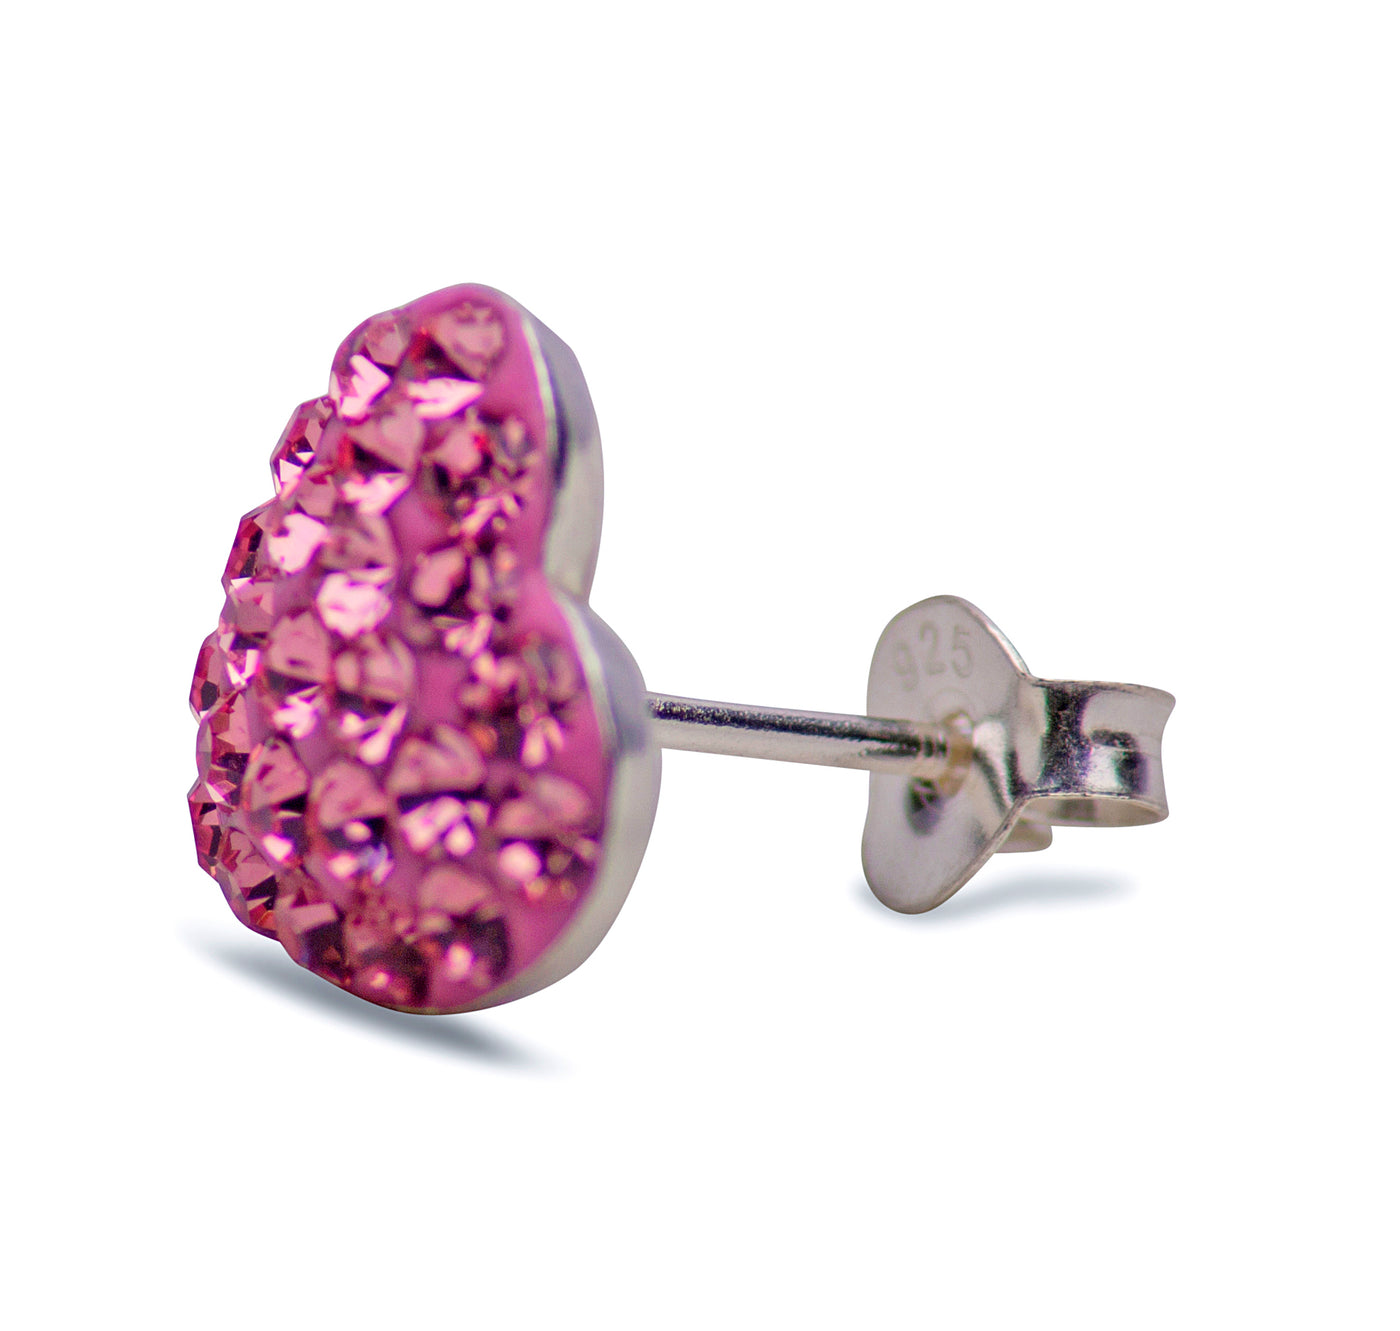 Pink Rose Cubic Zirconia Heart Stud Earrings | SilverAndGold